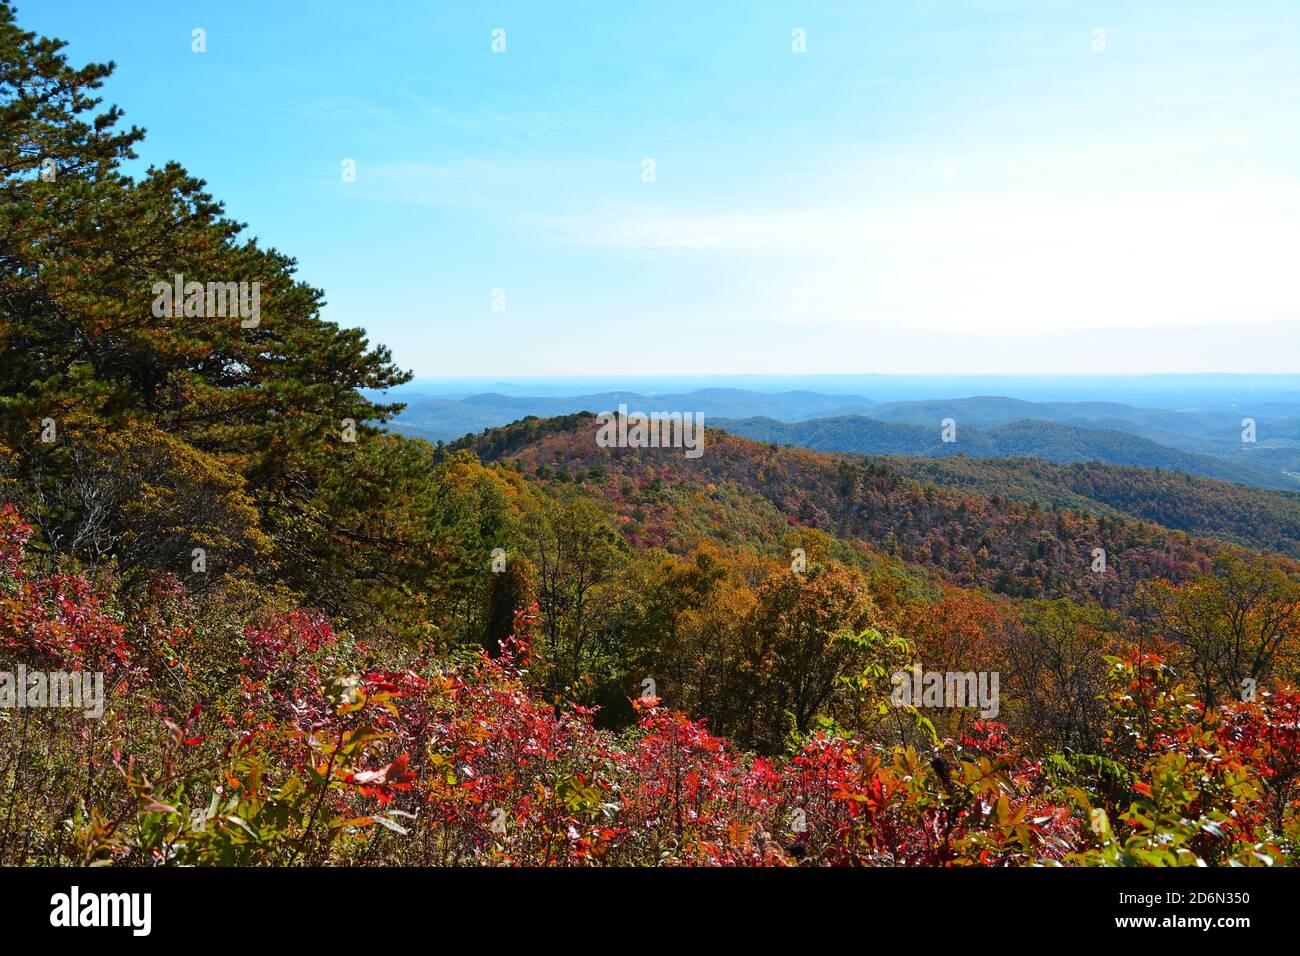 Vista desde un mirador durante el otoño en Carolina del Norte en el Blue Ridge Parkway. Foto de stock